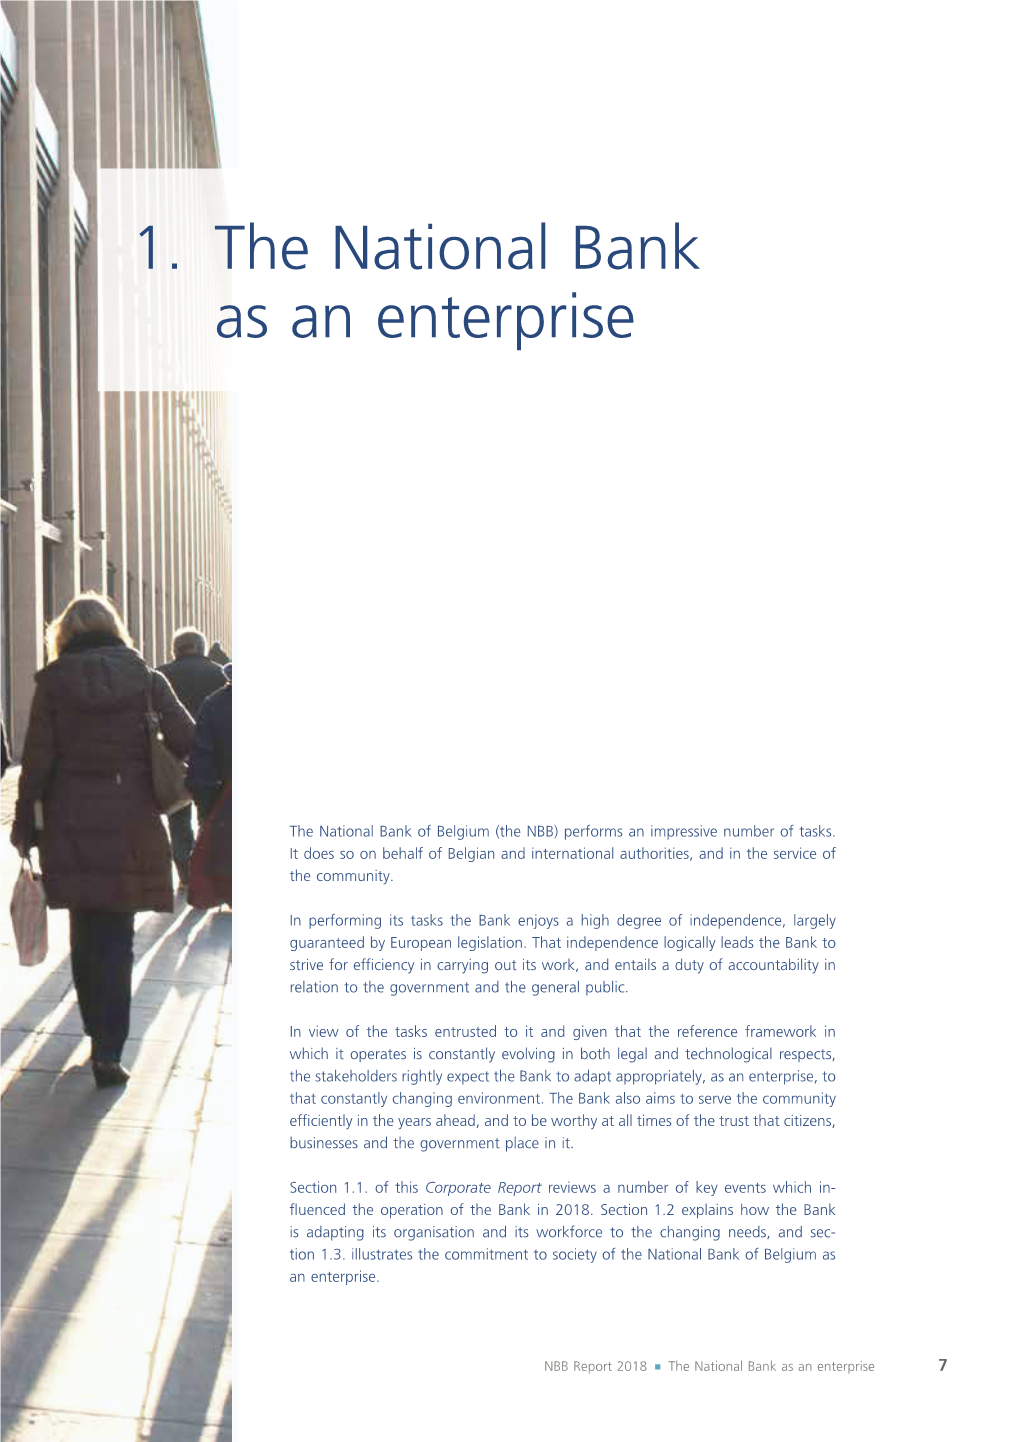 1. the National Bank As an Enterprise